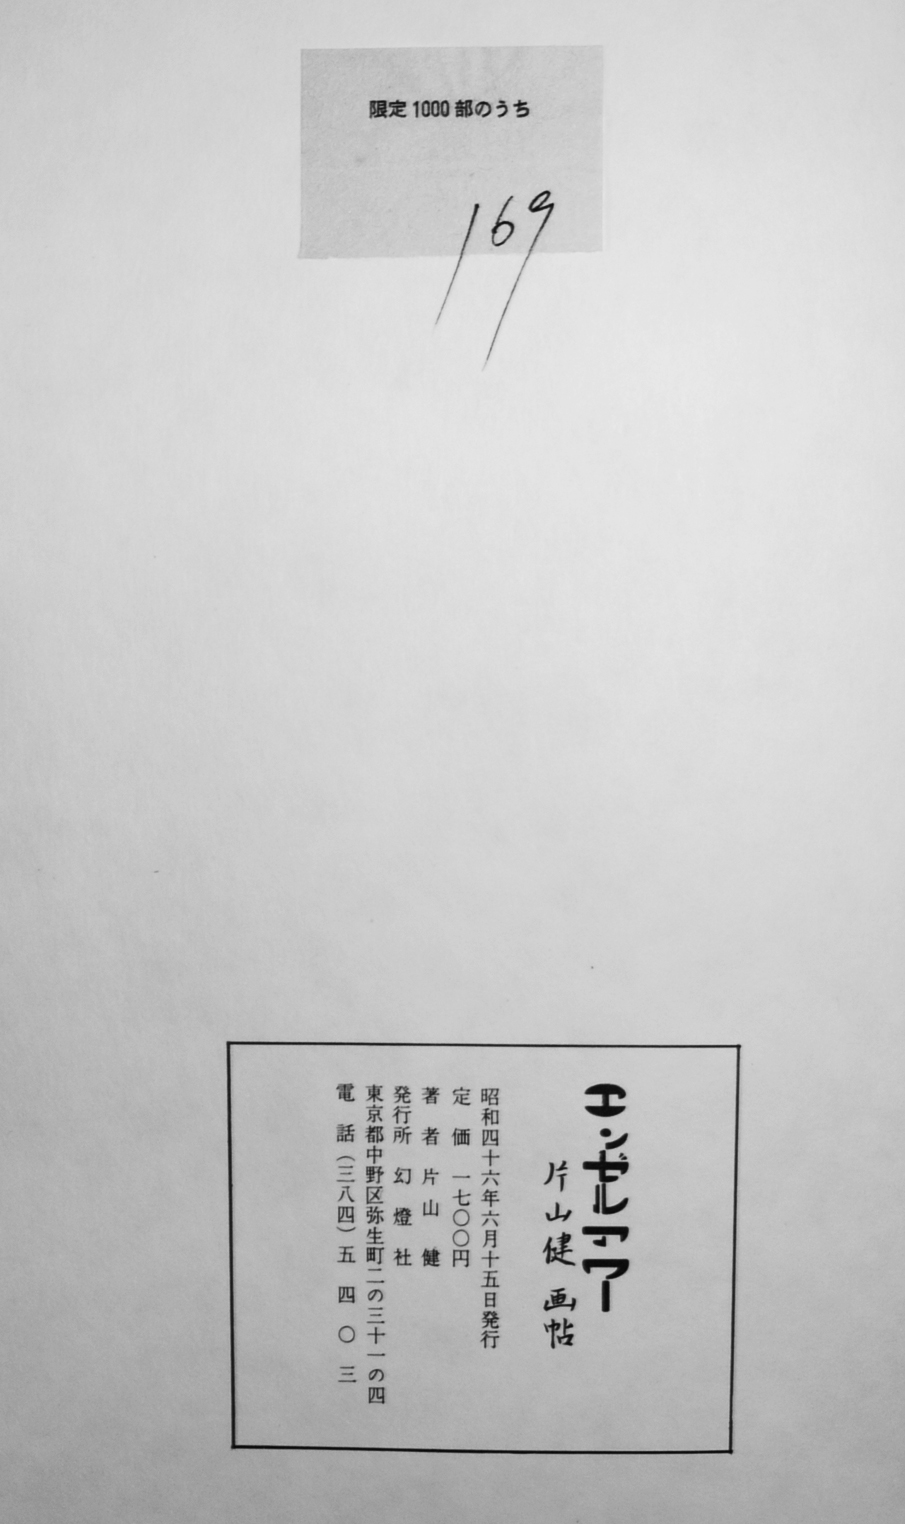 エンゼルアワー 片山健画帖 筒箱カバ署名入 限定169/1000 幻燈社 昭和 